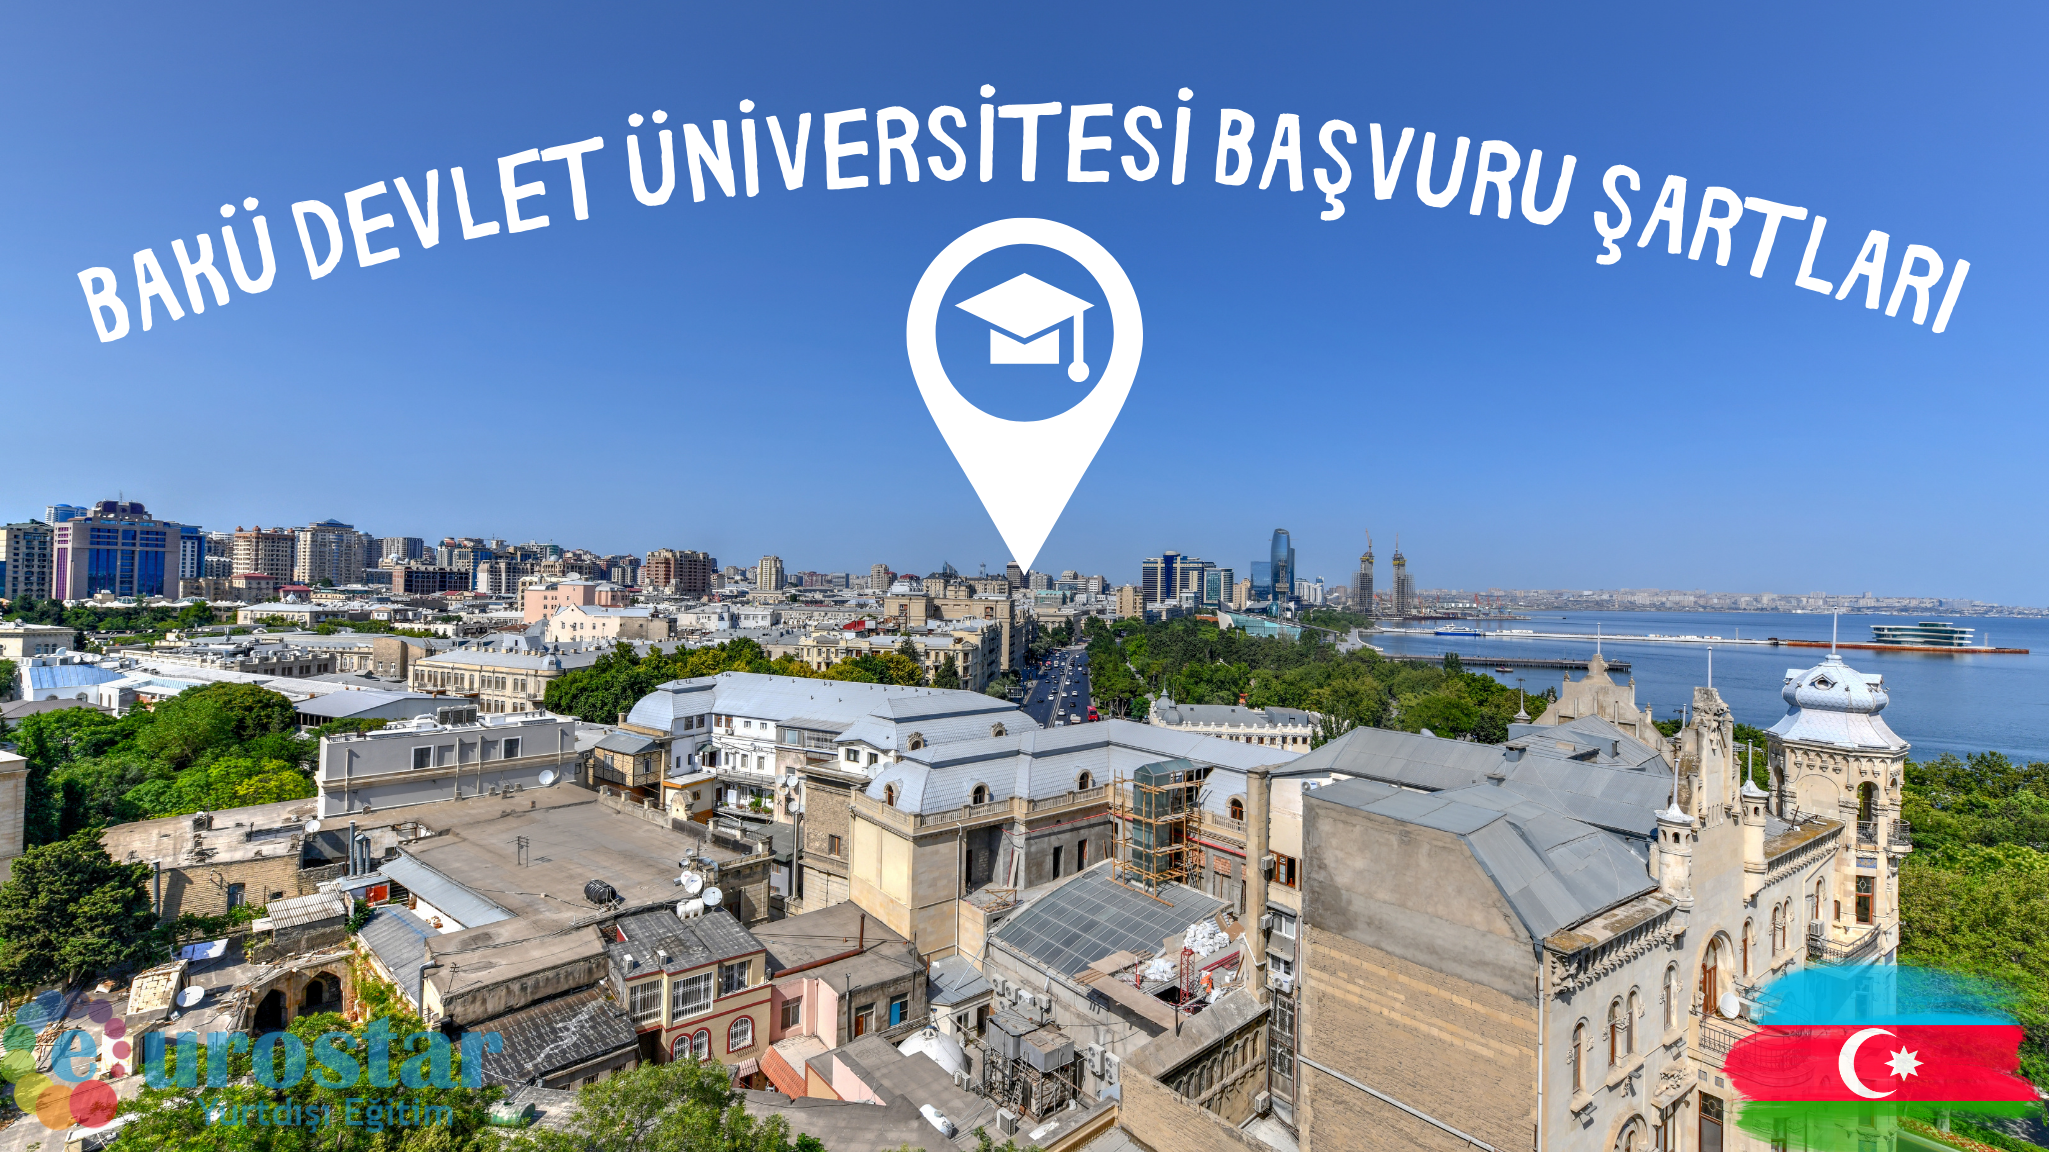 Bakü Devlet Üniversitesi Başvuru Şartları 